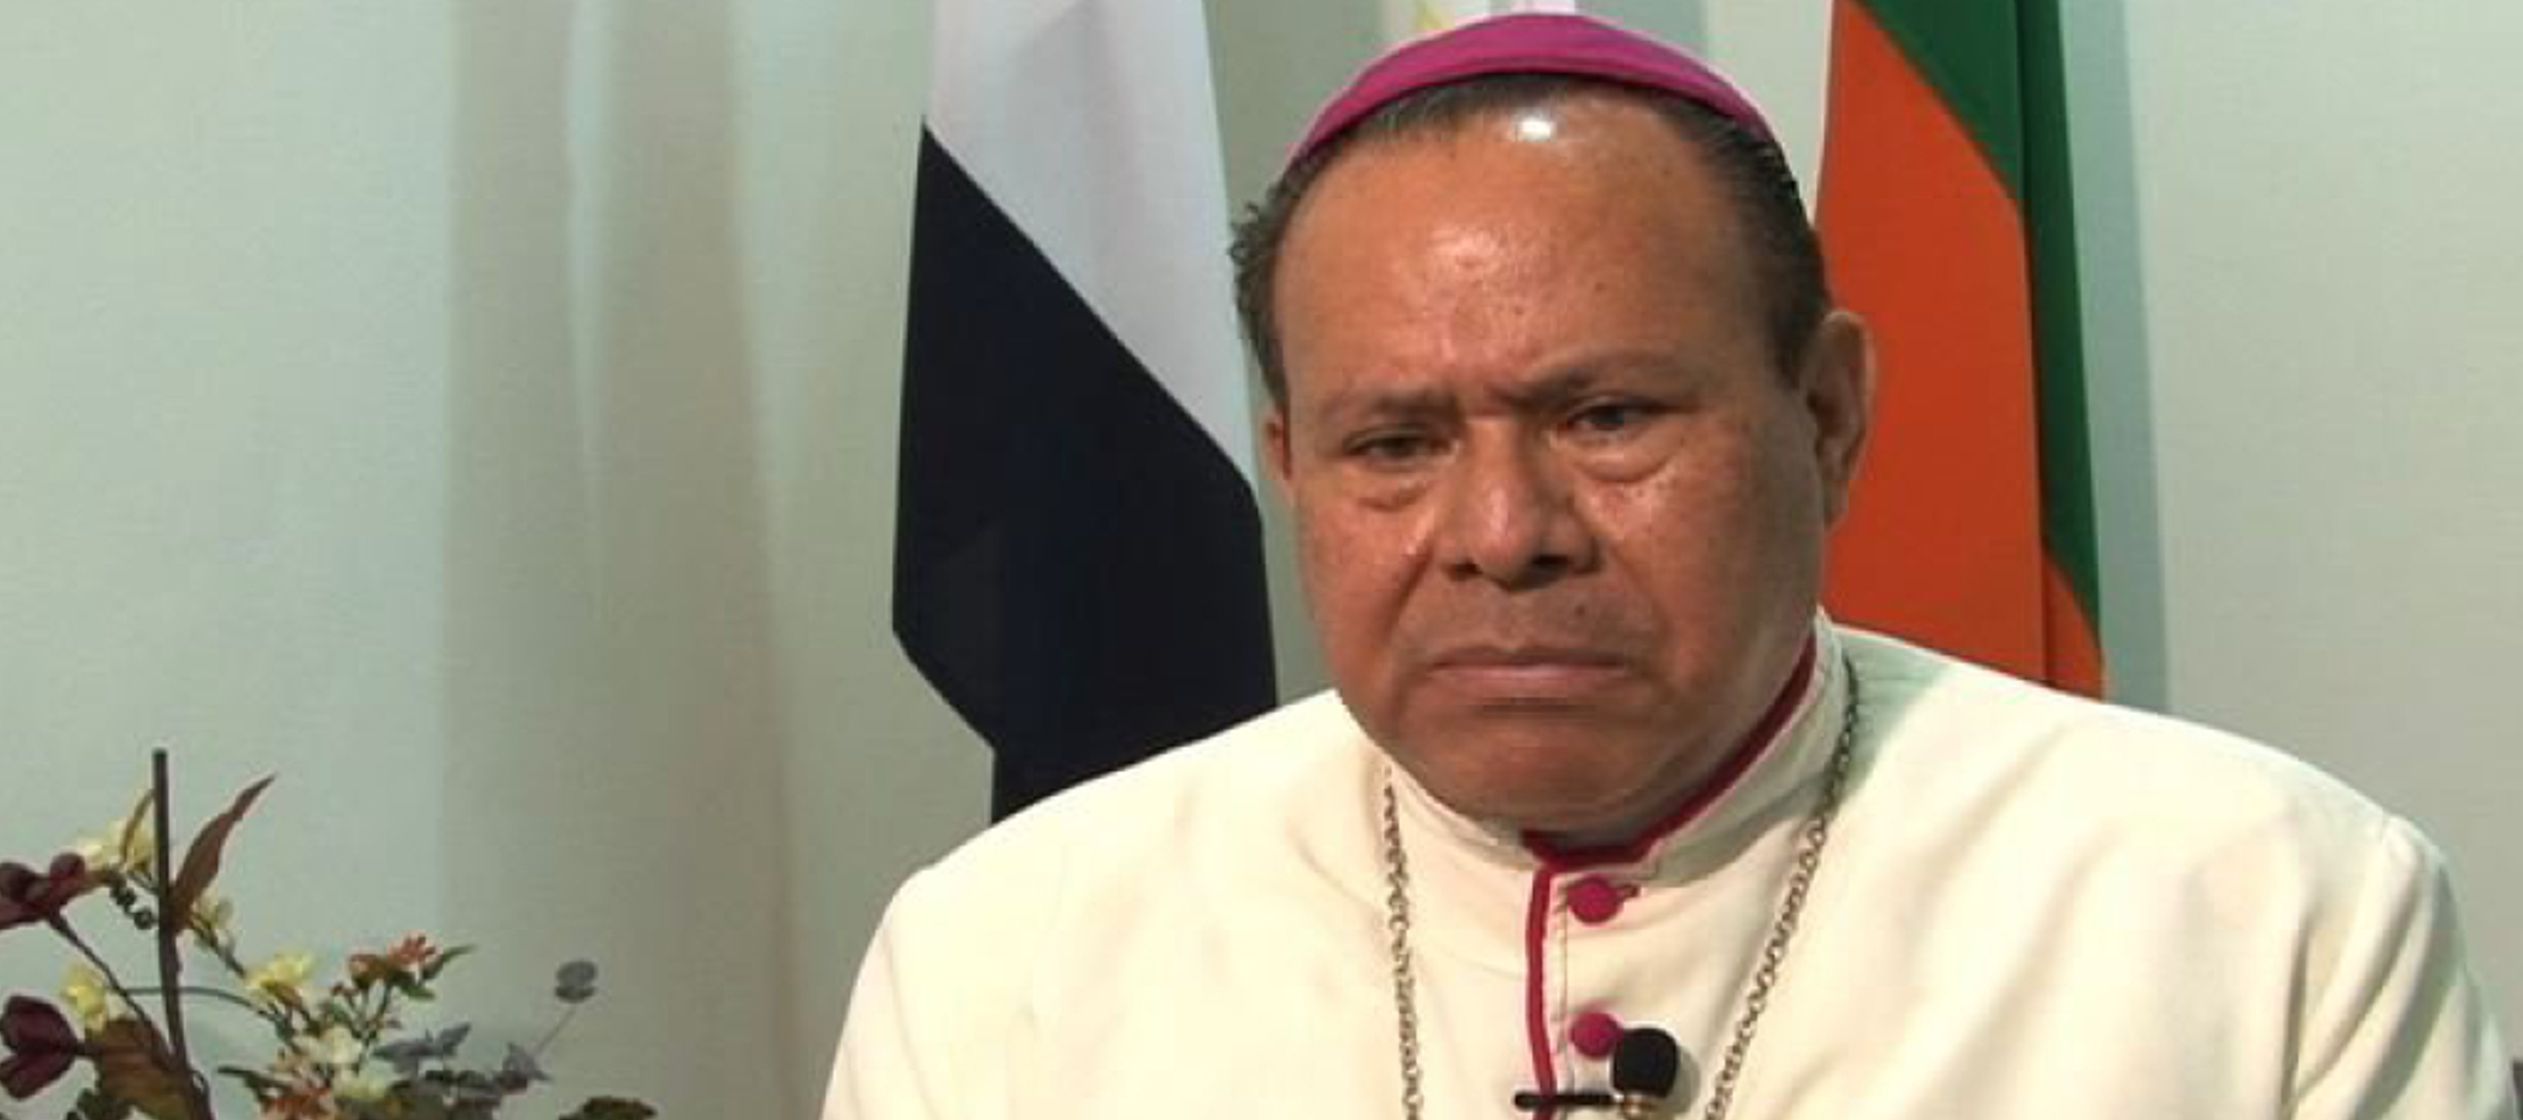 A juicio del obispo Mata, "el destino de Nicaragua es su liberación de este sistema que...